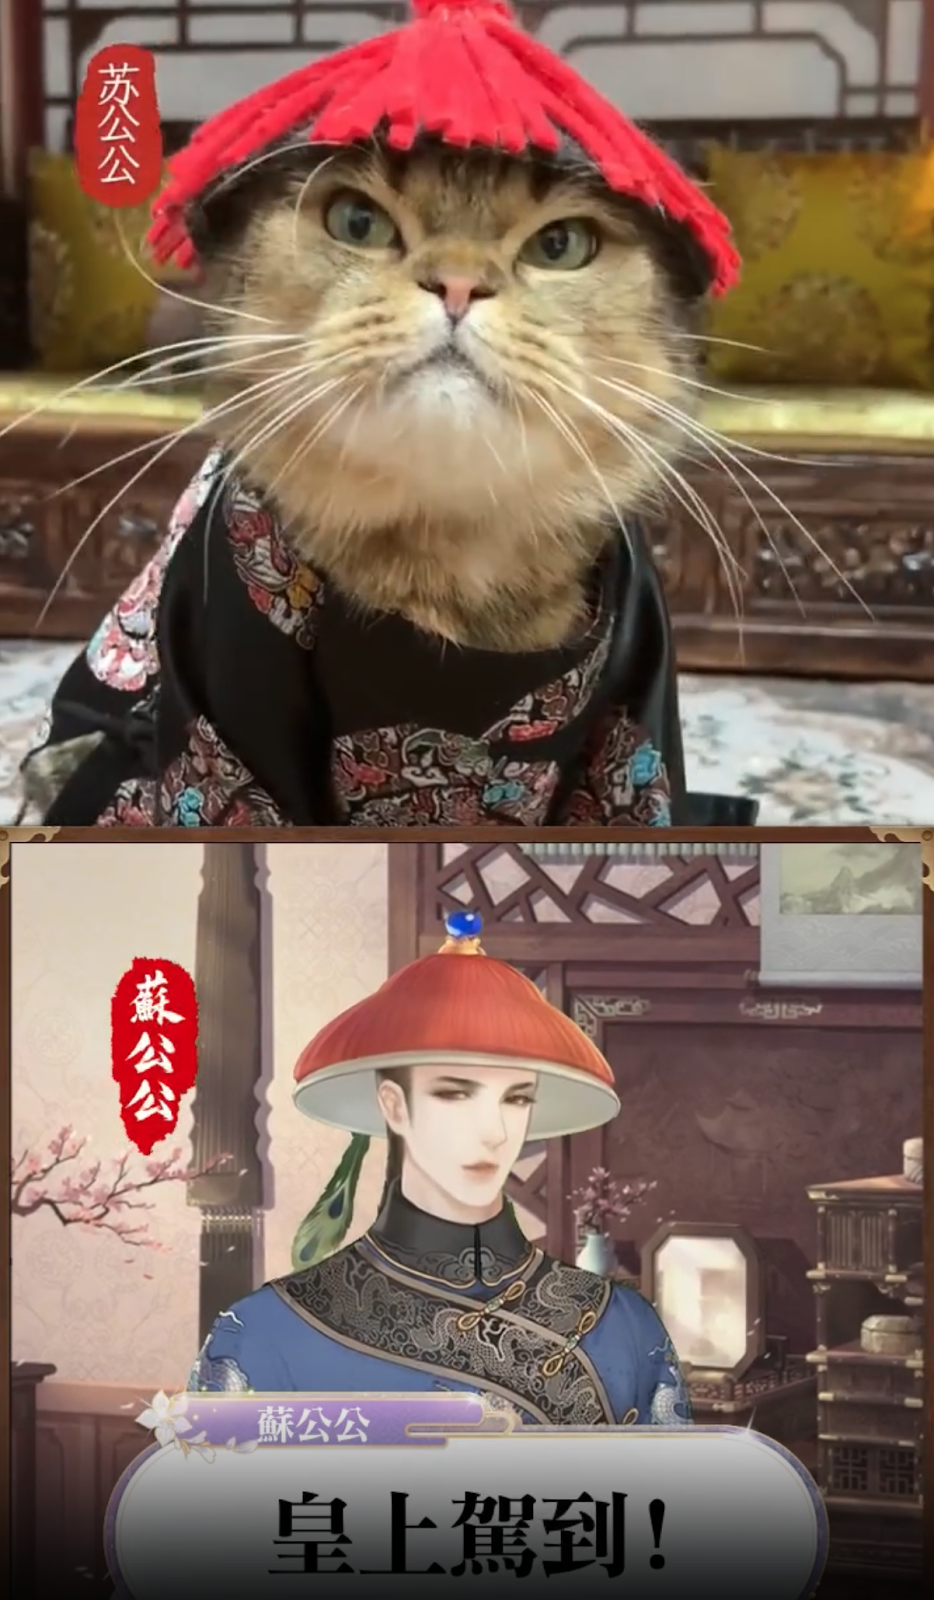 一隻穿著和服的貓和一張人的照片 自動生成的描述